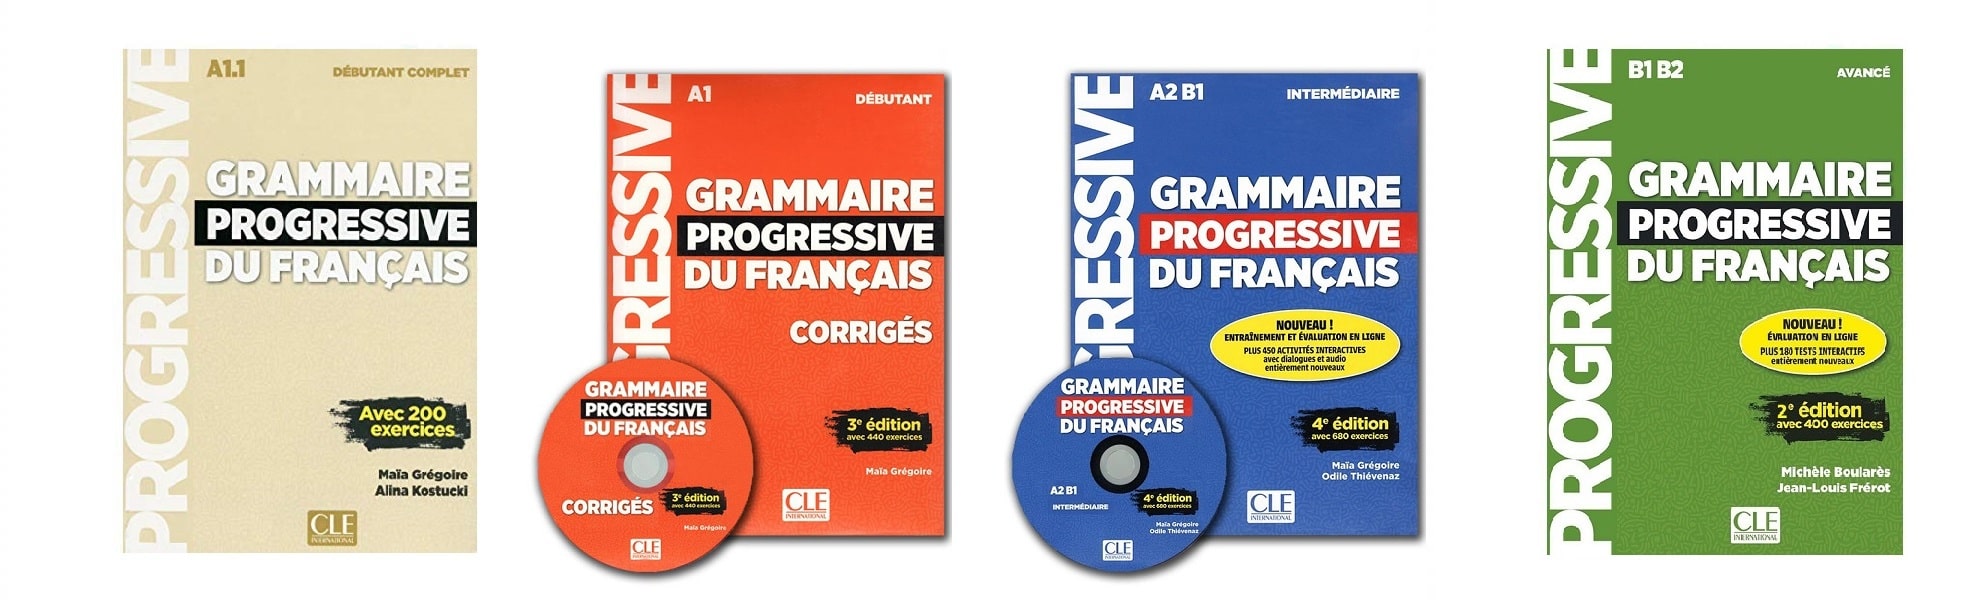 خرید کتاب زبان فرانسوی | فروشگاه اینترنتی کتاب زبان فرانسه | Grammaire Progressive Du Francais | گرامر پروگرسیو فرانسه